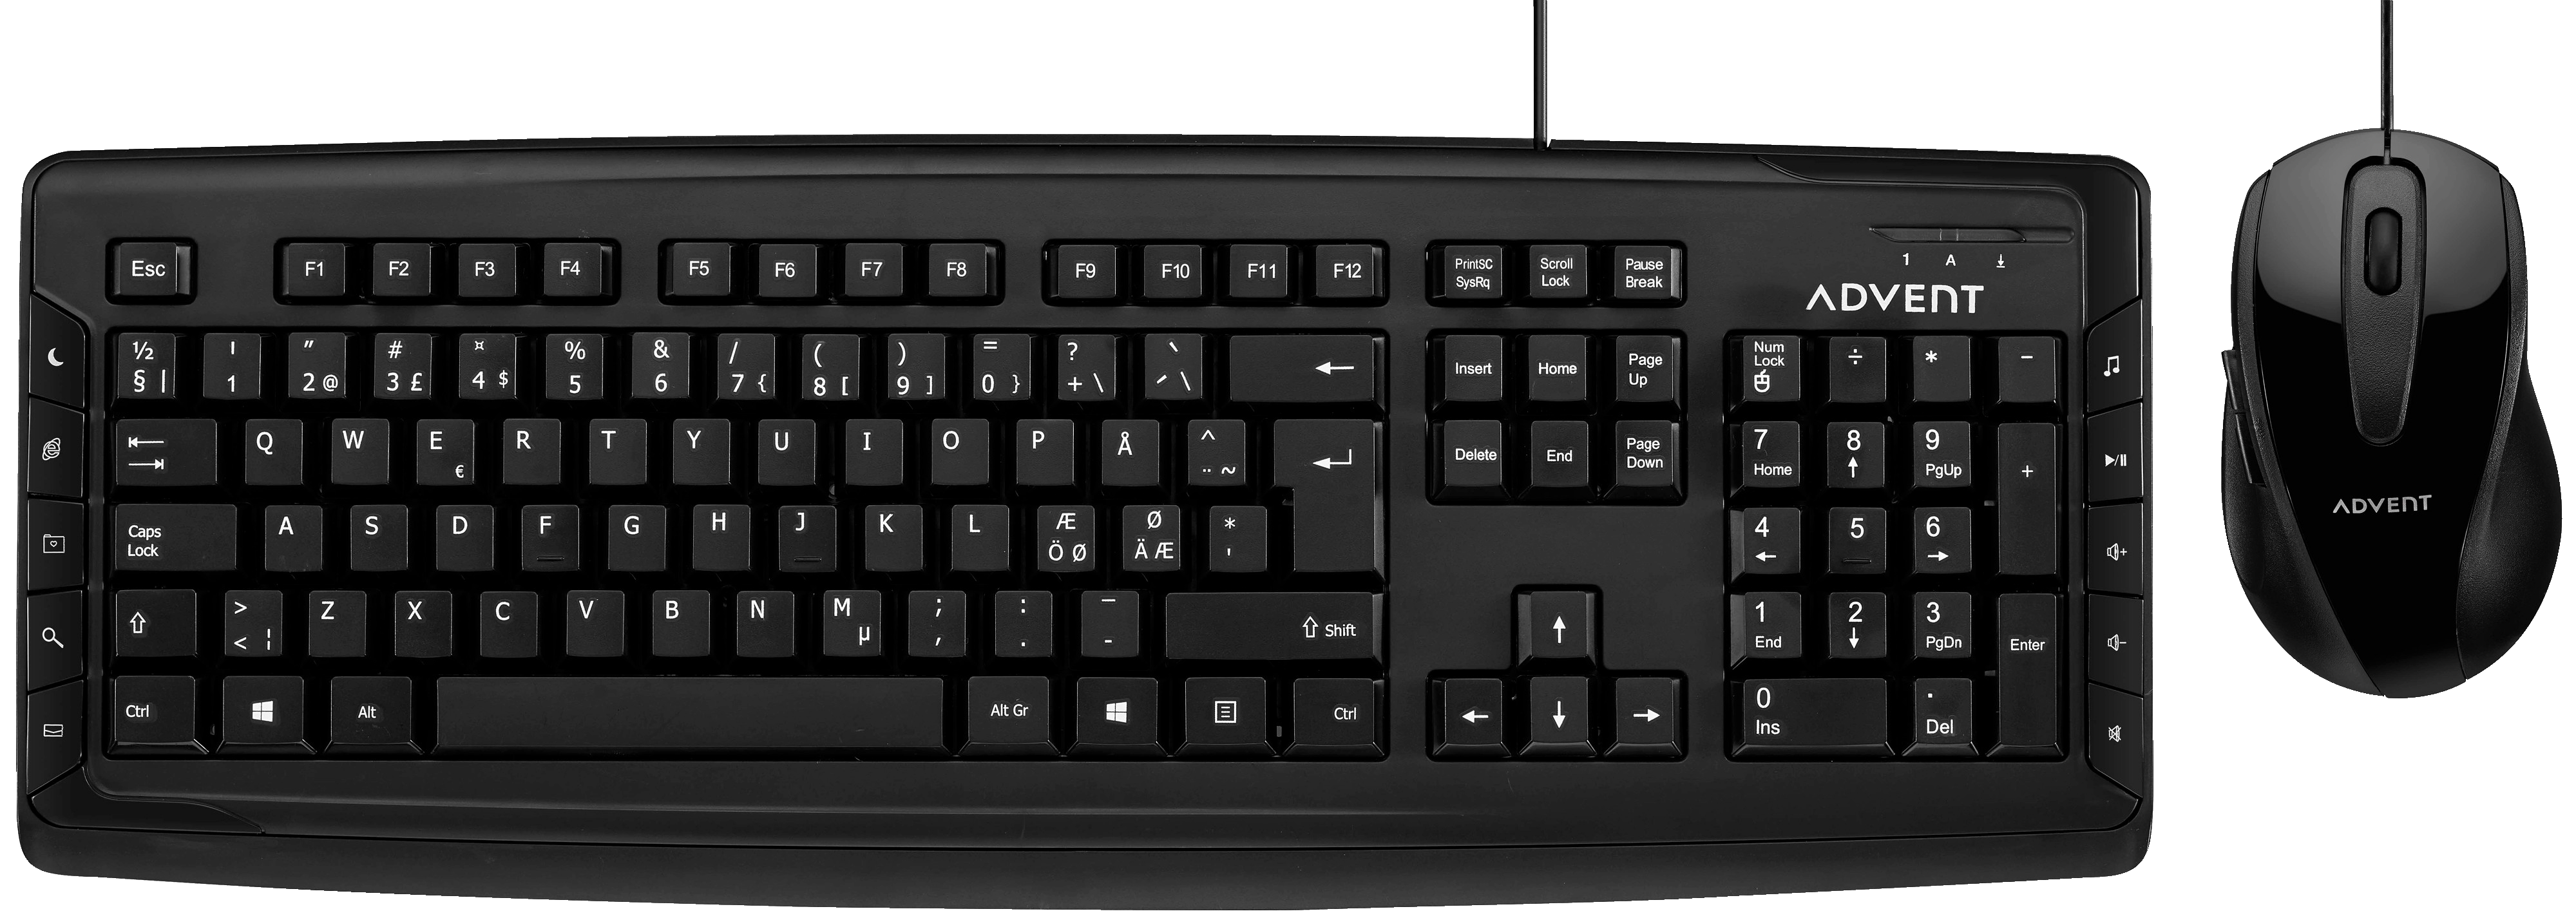 Advent kablet tastatur og mus (sort) - Mus og tastatur - Elkjøp